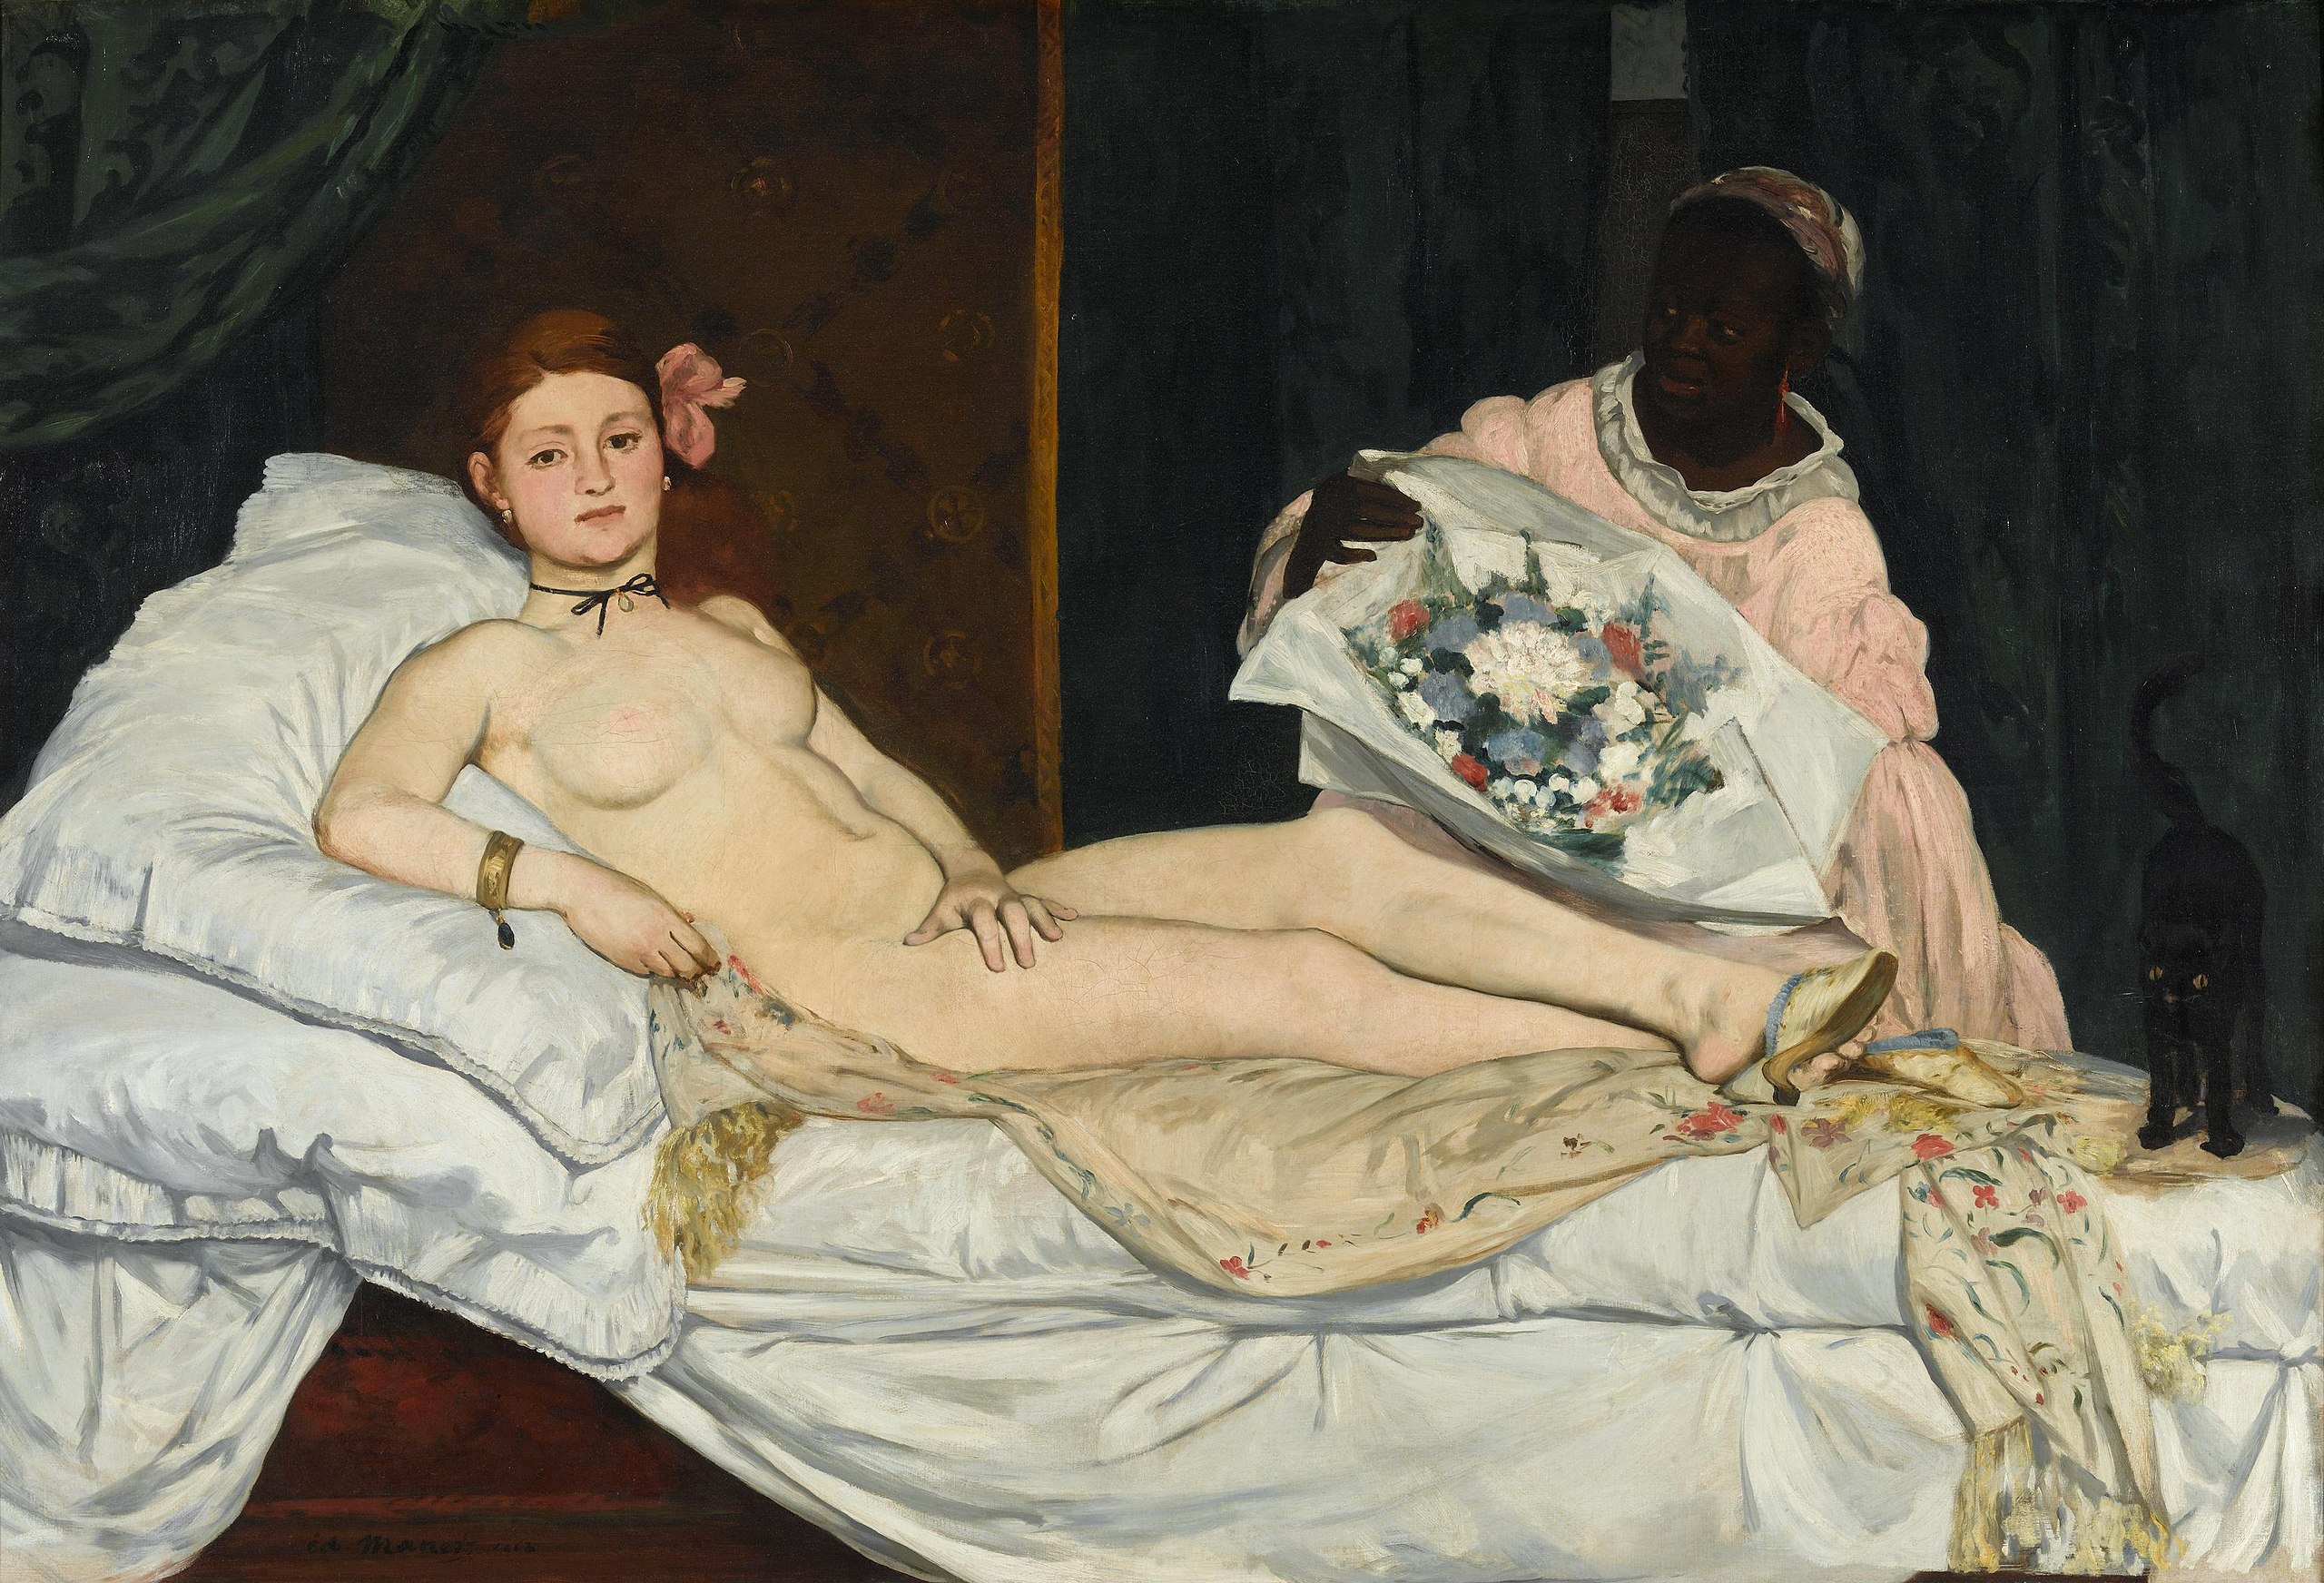 أوليمبيا by Édouard Manet - 1863 - الأبعاد: 190x130 سم 